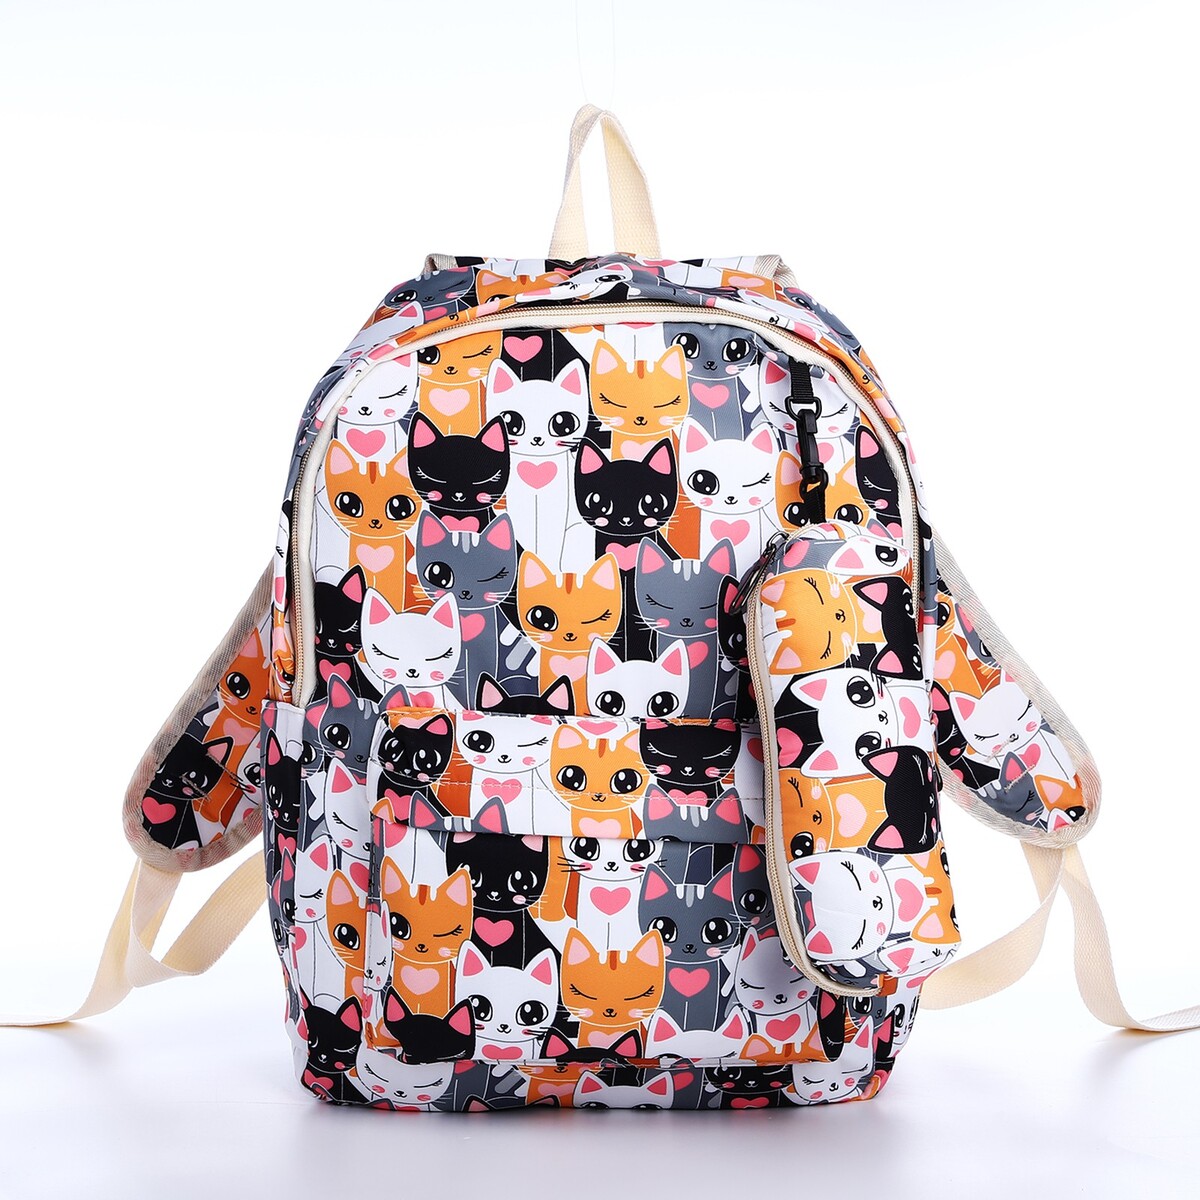 Рюкзак школьный из текстиля на молнии, 3 кармана, пенал, цвет разноцветный/оранжевый